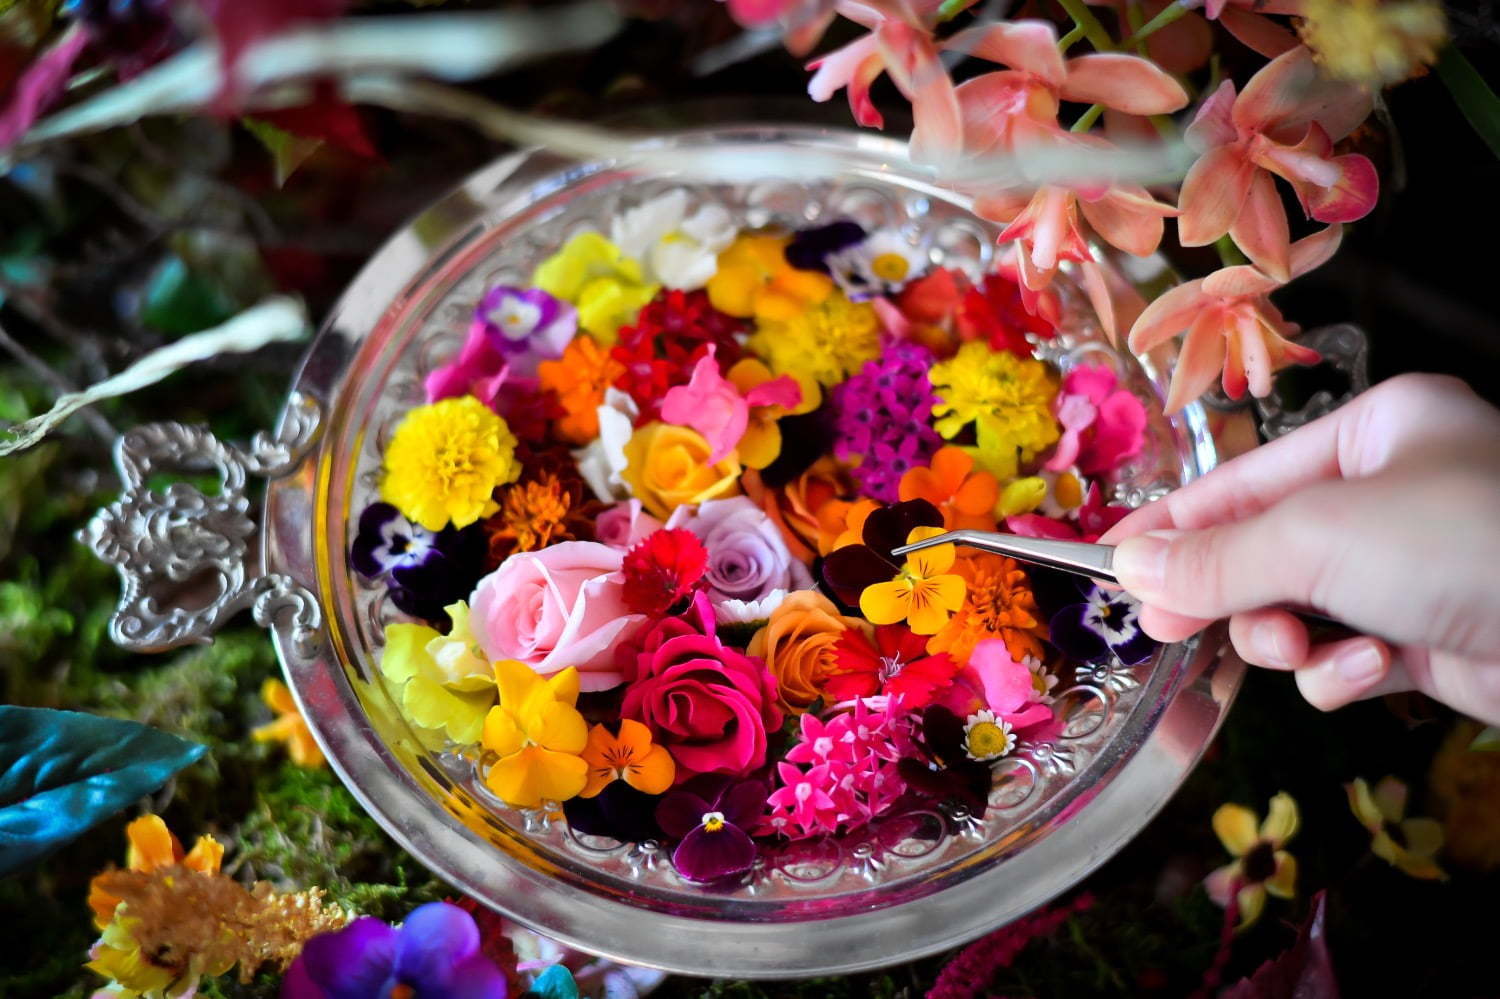 食べられる花 体験型アートイベント おいしい花畑 池袋にて 花 ハーブで彩るオリジナルドリンク ファッションプレス